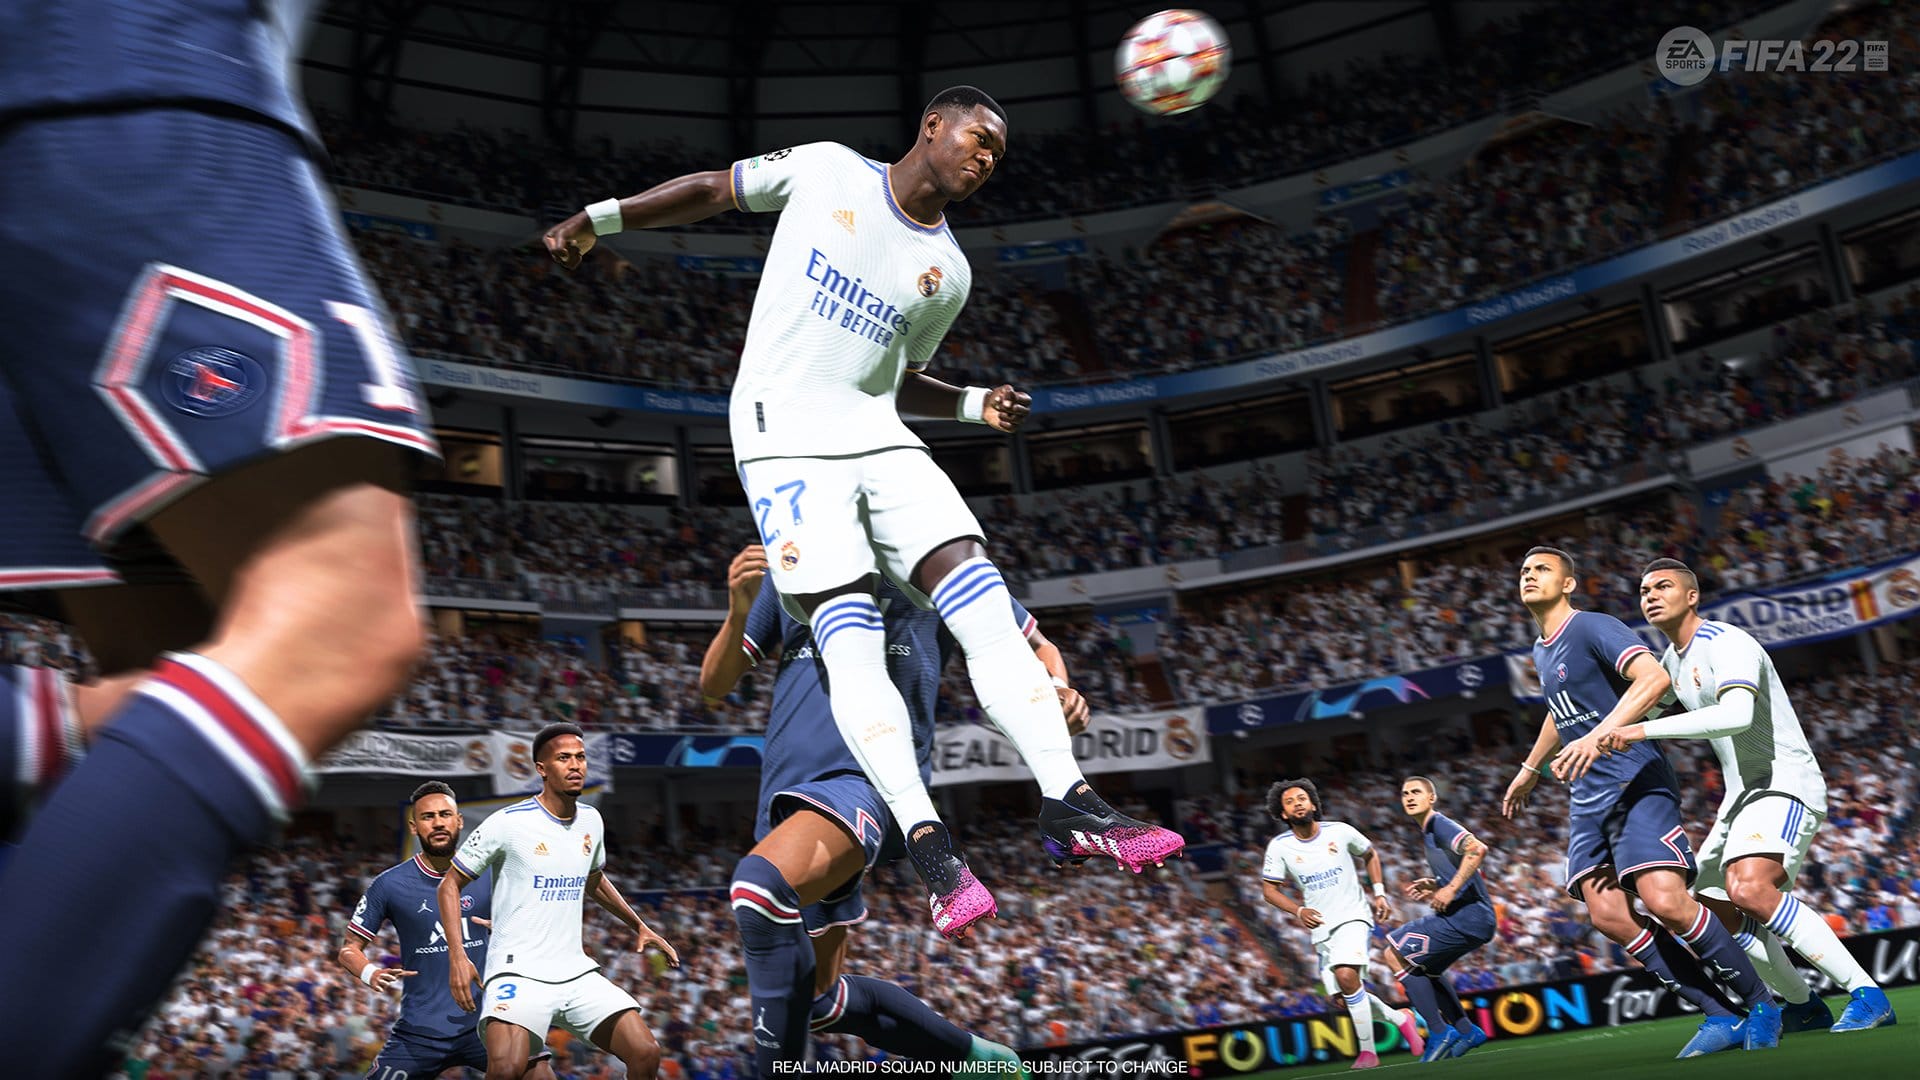 FIFA 22 Update 1.000.019